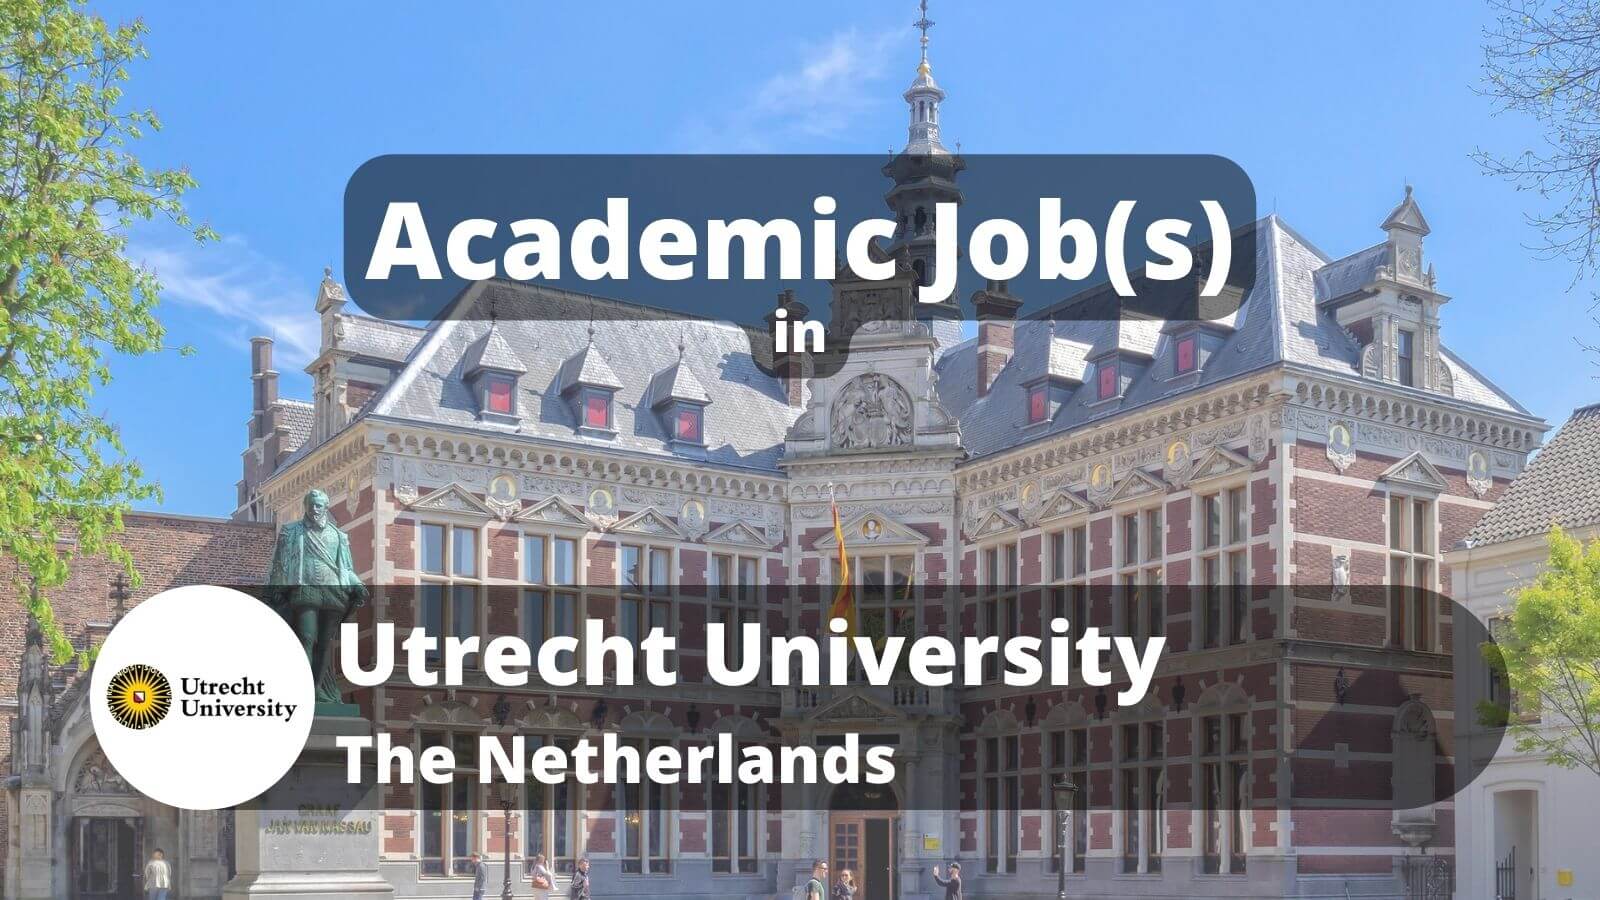 Academic jobs in Utrecht University UU, The Netherlands